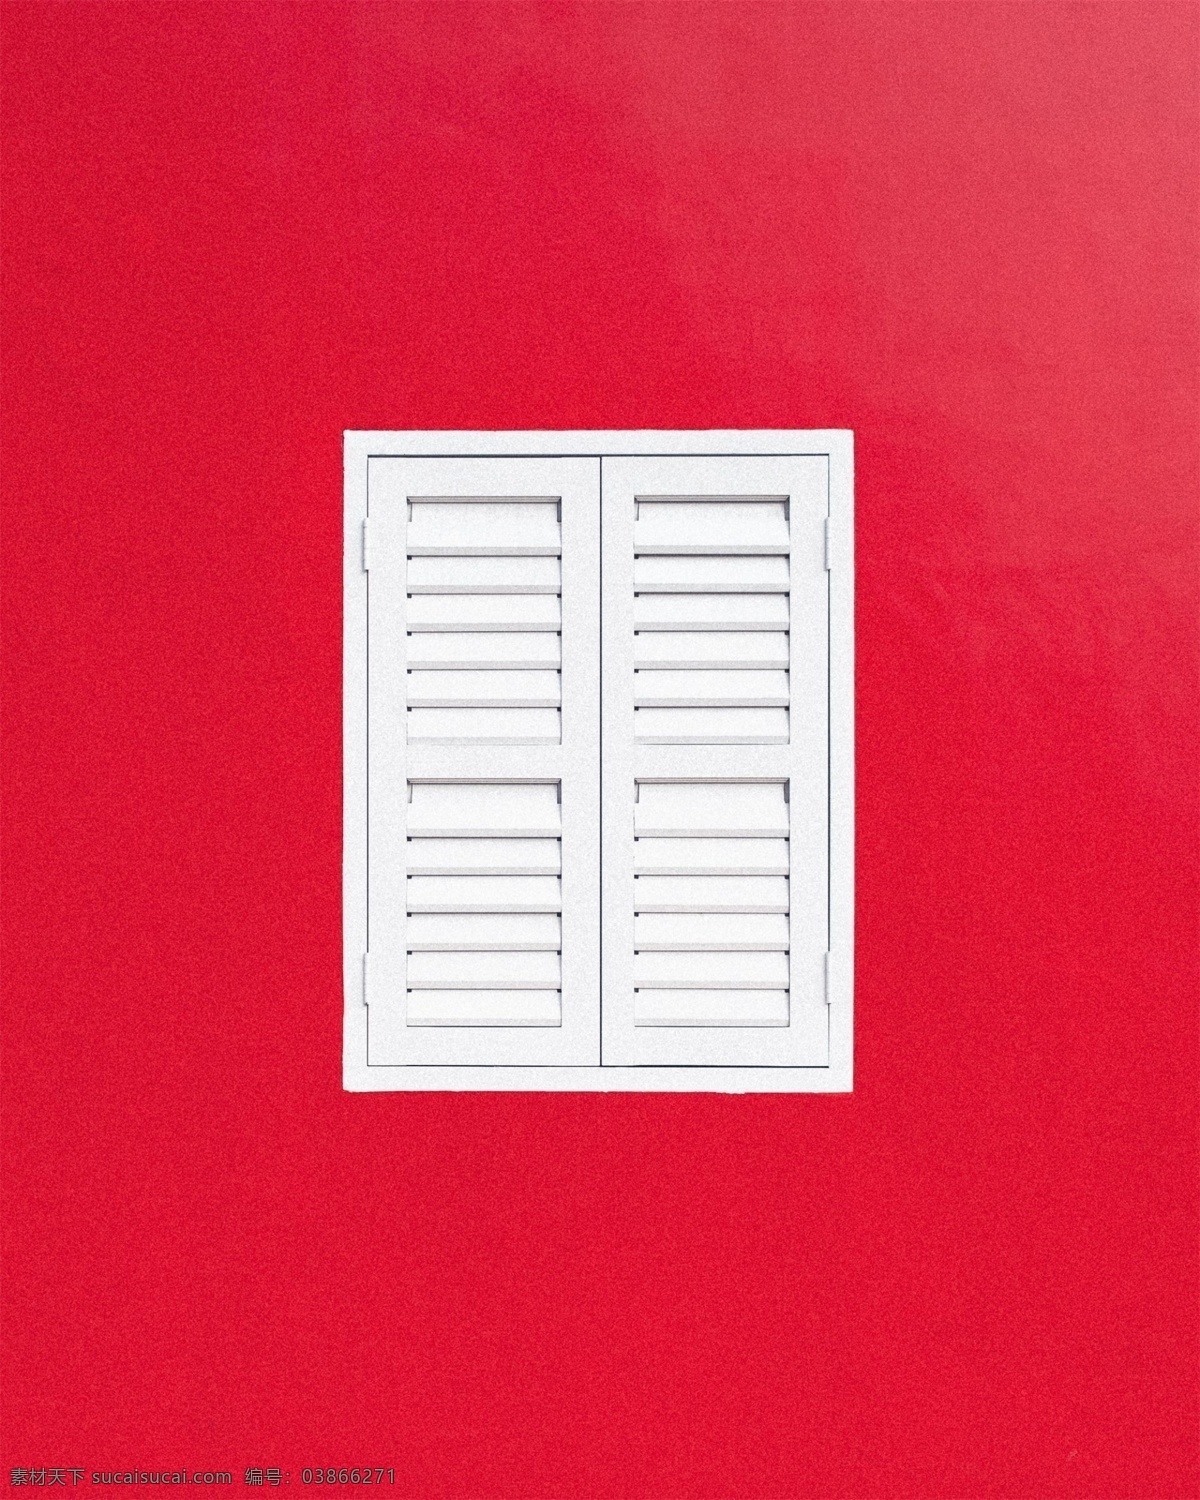 白色窗户 窗户 窗台 白色窗台 红色 红色背景 背景 创意 高清 简单 简约 大气 清新 壁纸 电脑壁纸 桌面 电脑桌面 海报 设计素材 拍摄 摆拍 1920px 生活百科 家居生活